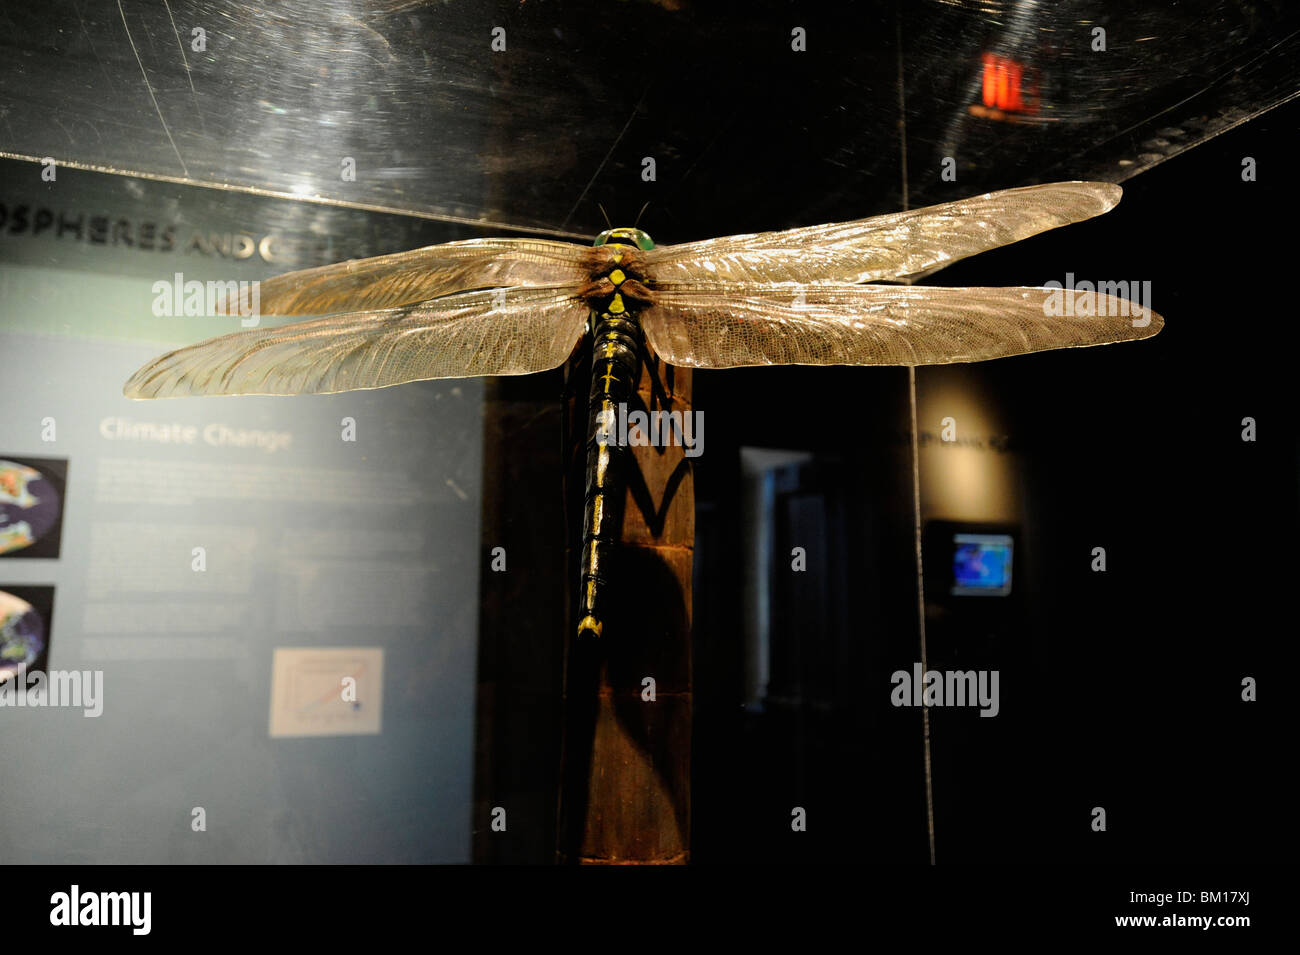 Peabody Museum, New Haven, Connecticut. La libellula gigante Meganeuropsis del periodo carbonifero è il più grande fossile di insetti mai trovato. Foto Stock